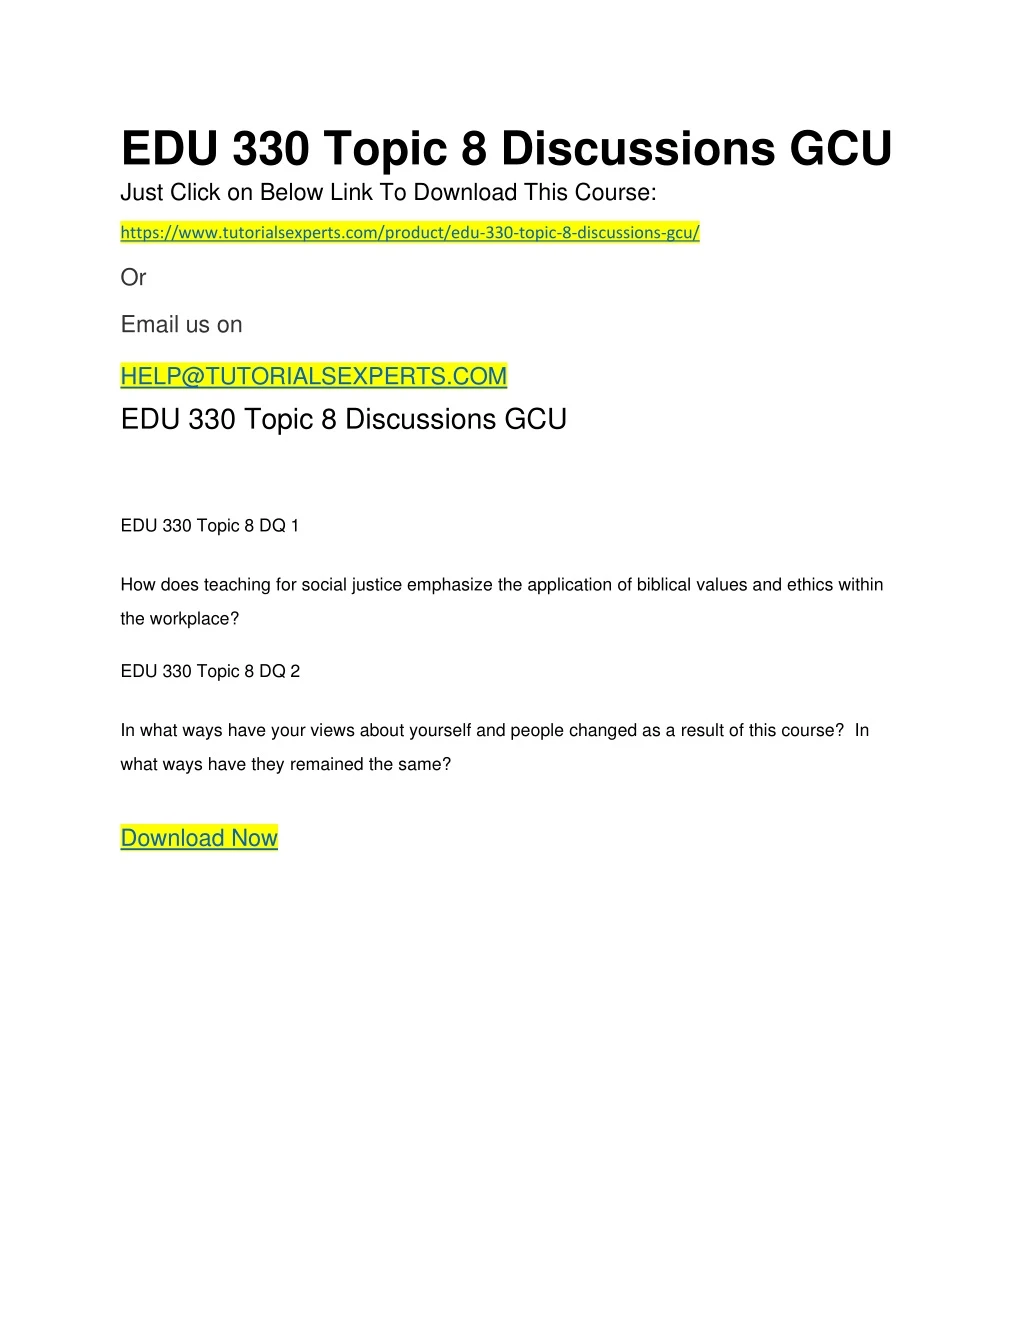 edu 330 topic 8 discussions gcu just click